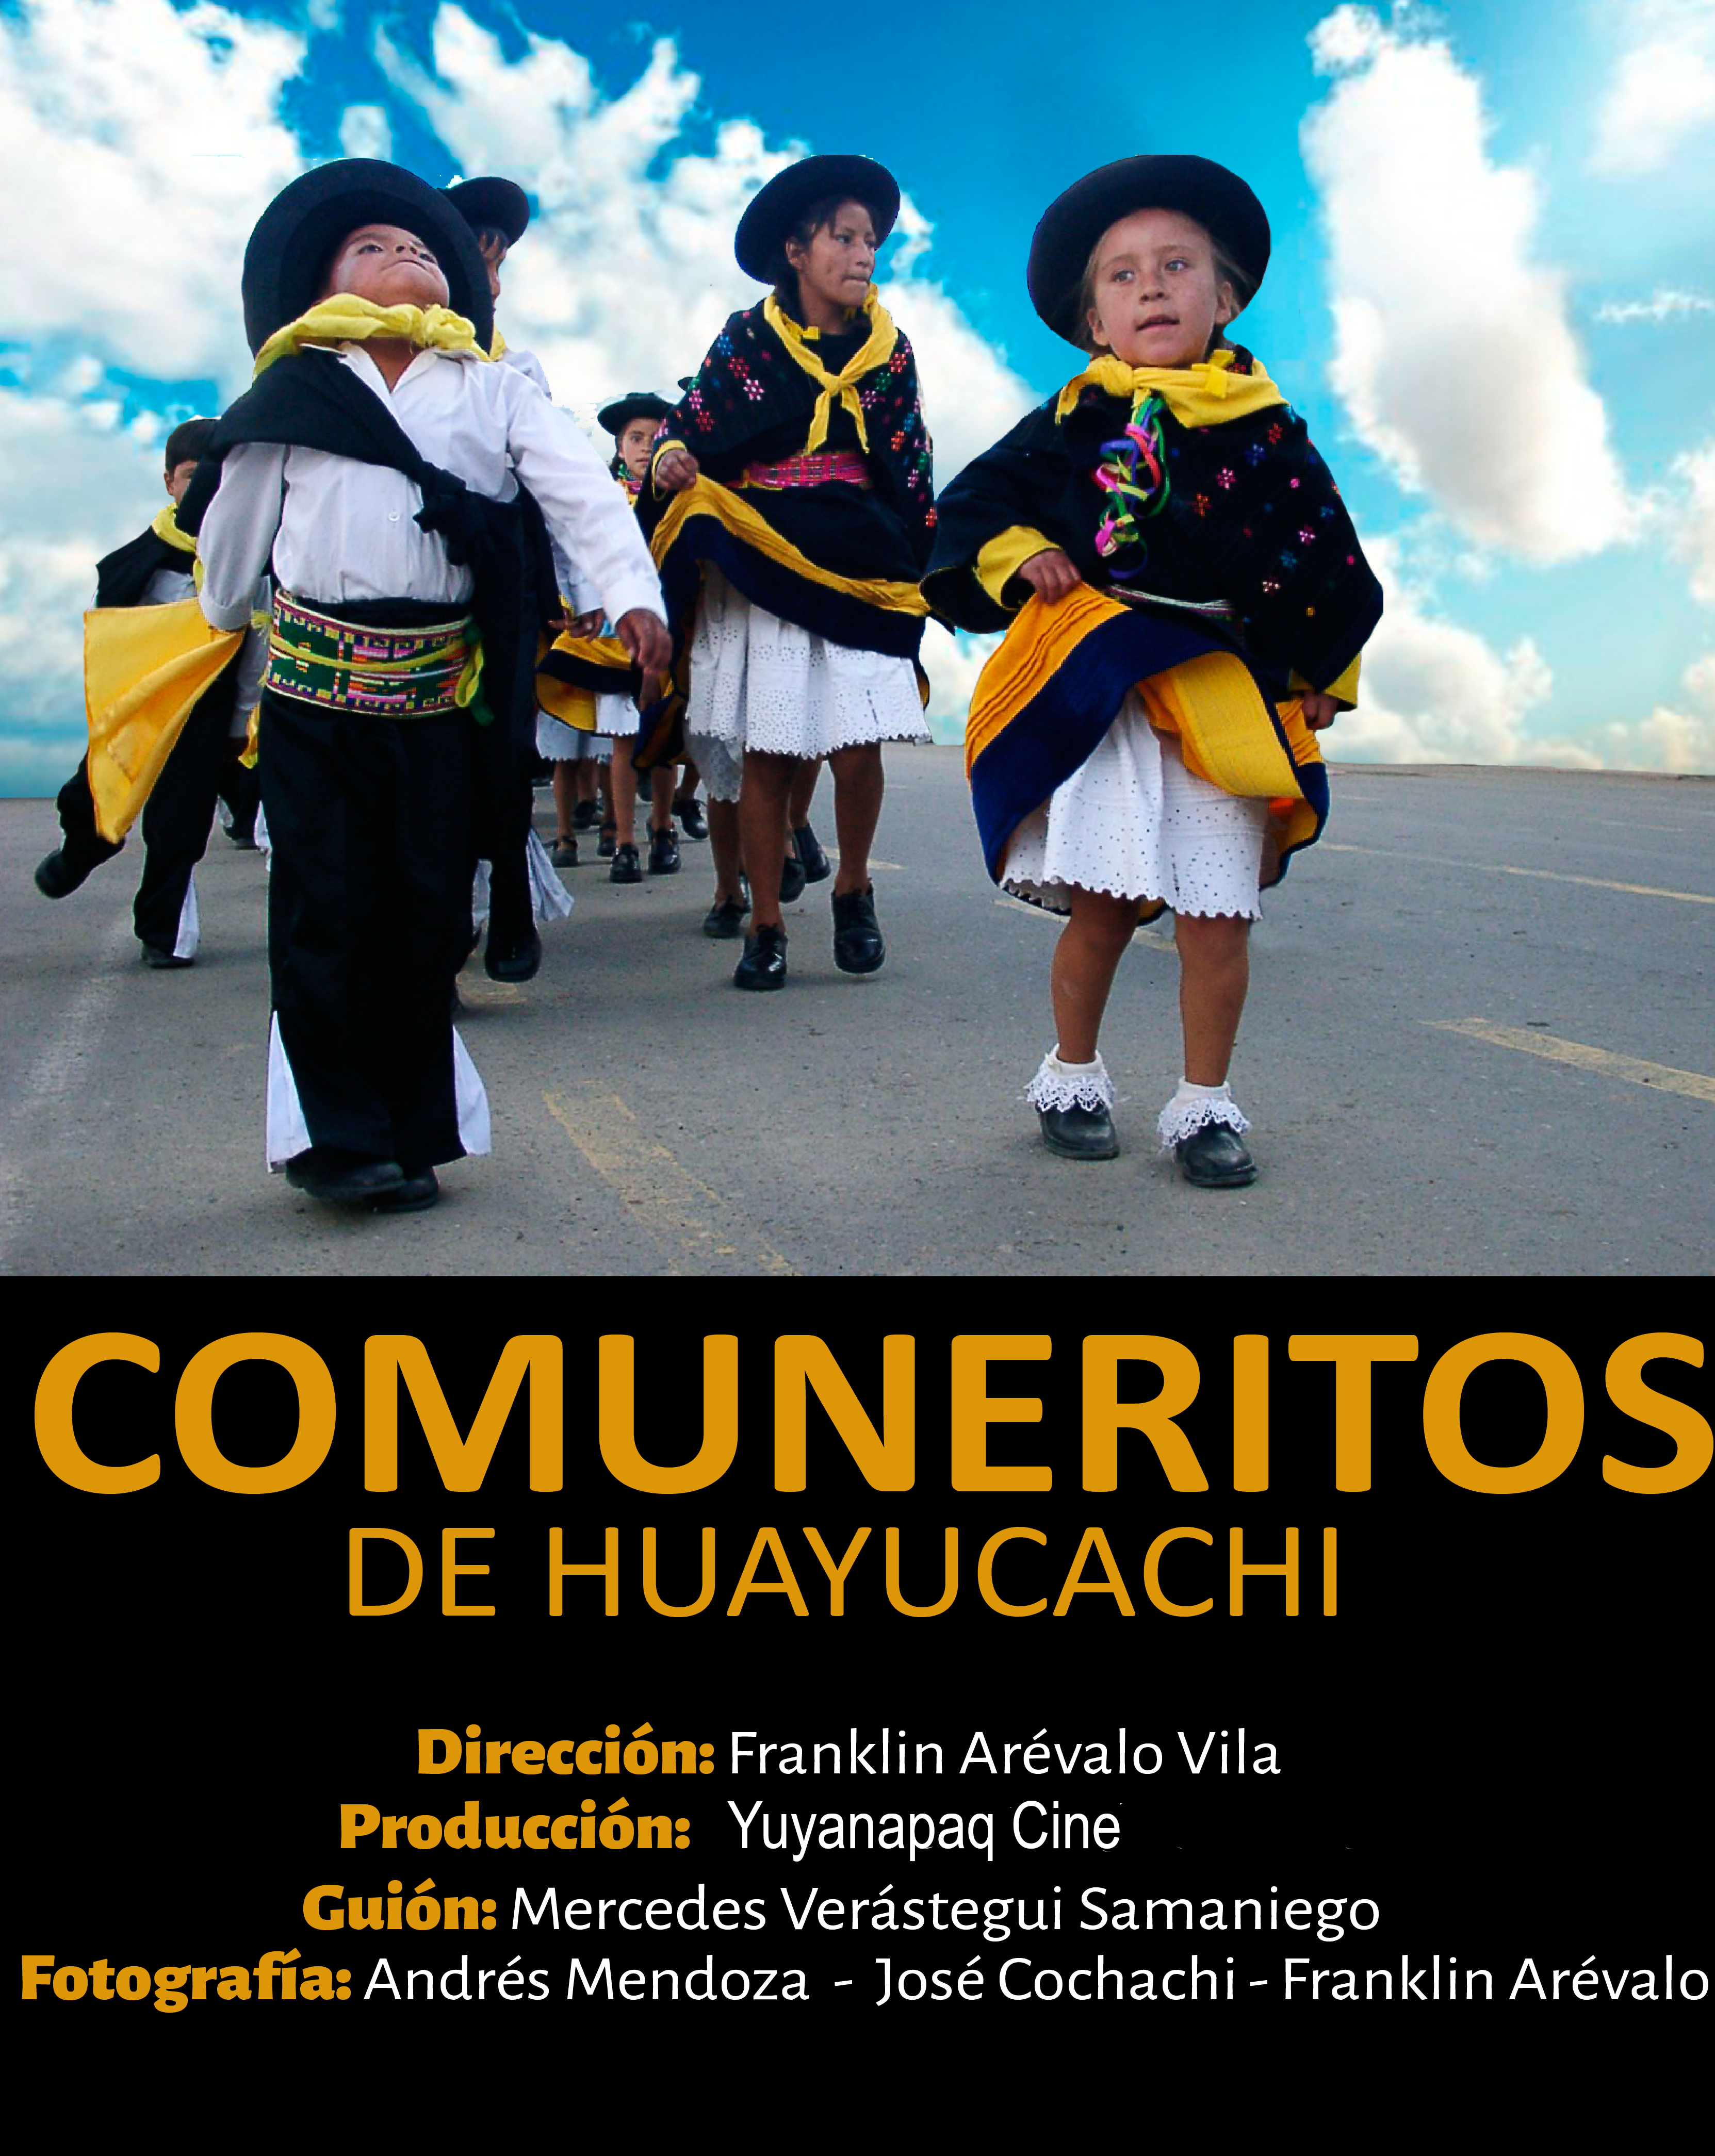 COMUNERITOS DE HUAYUCACHI